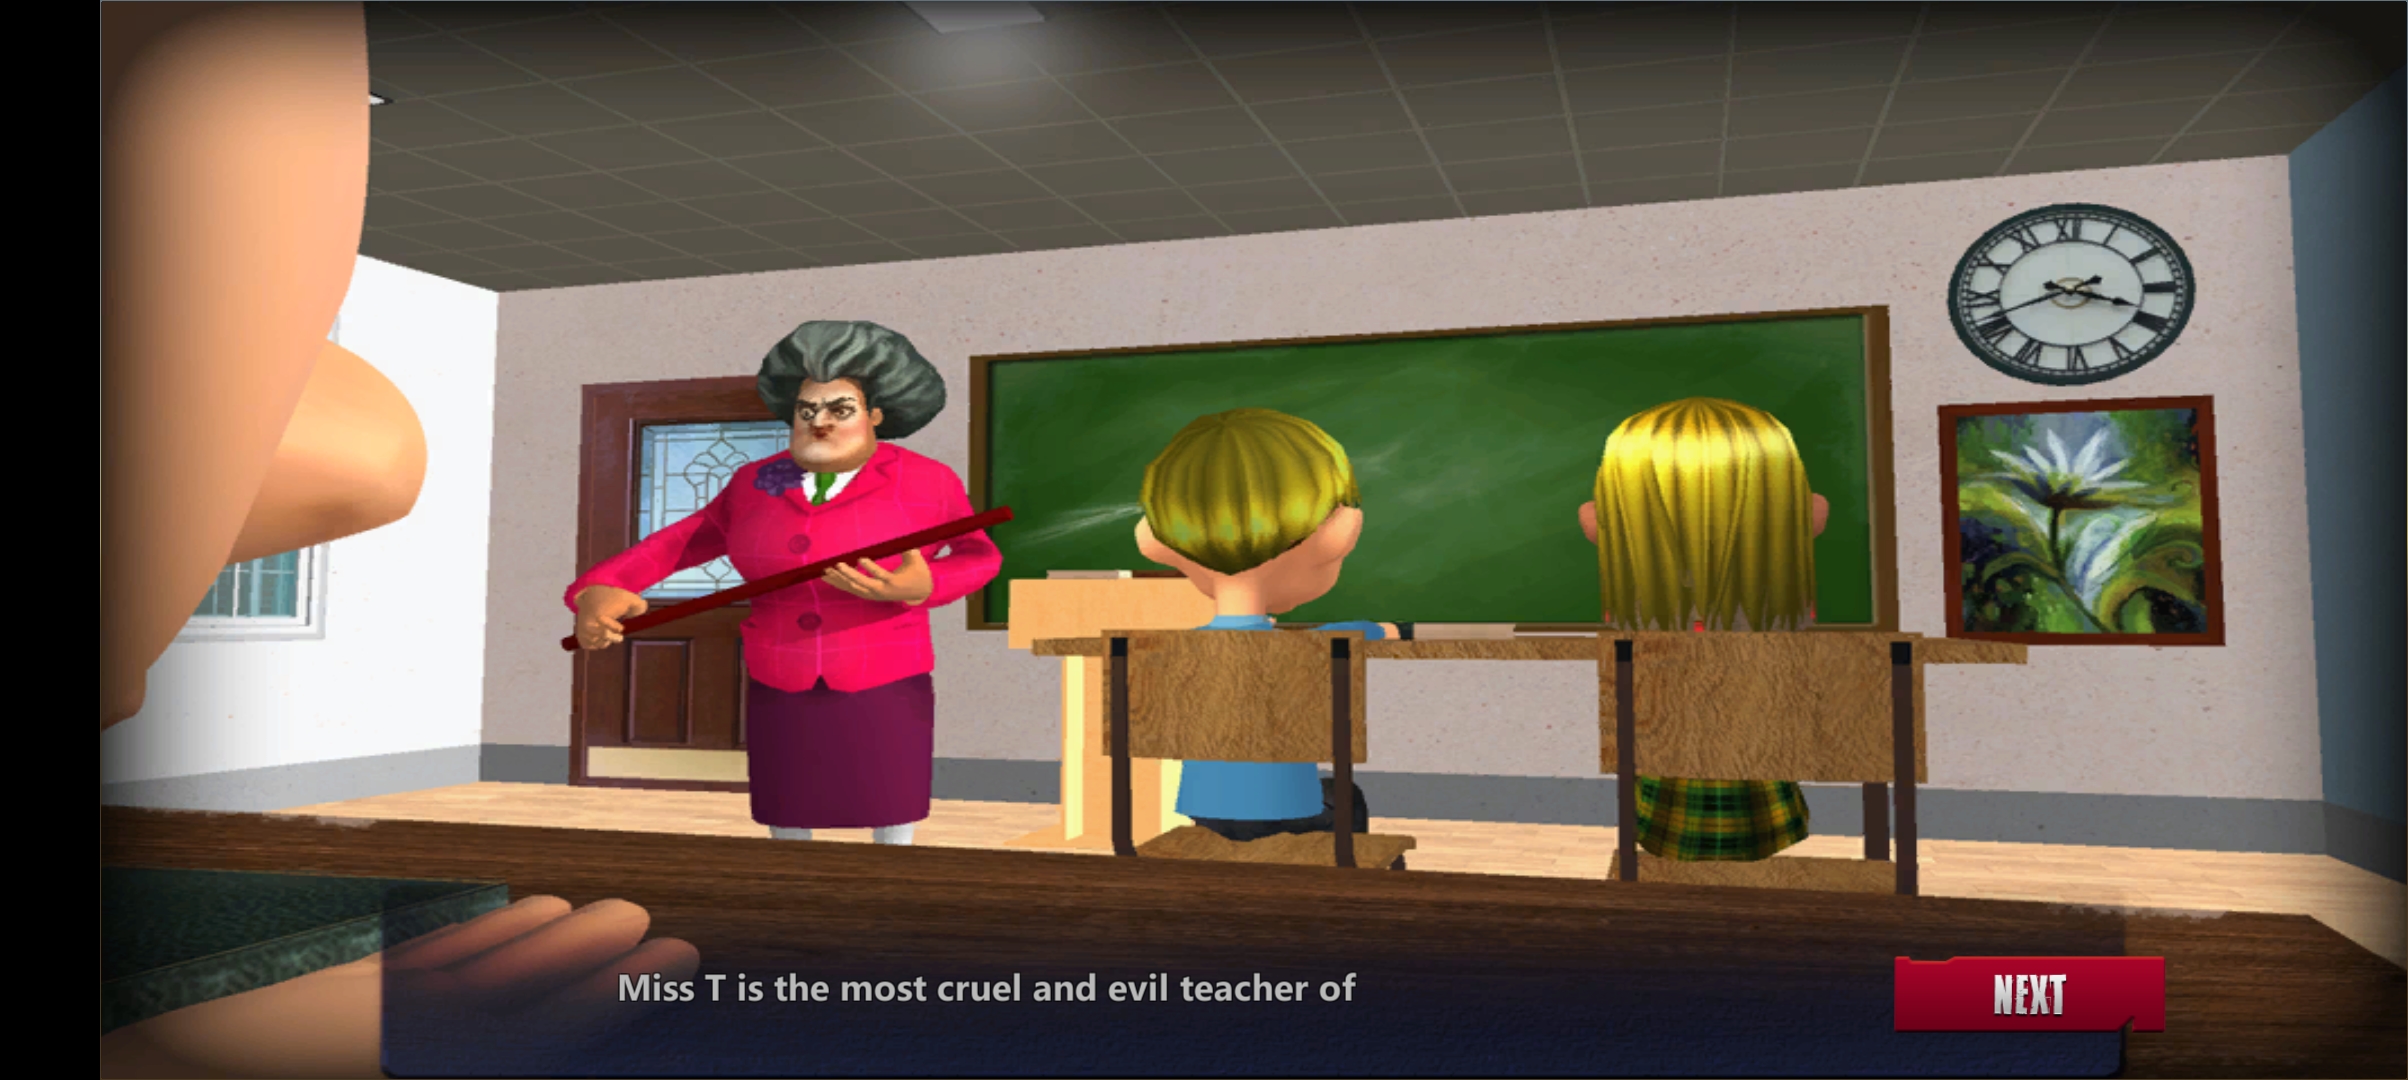 恐怖老师3D破解版截图3